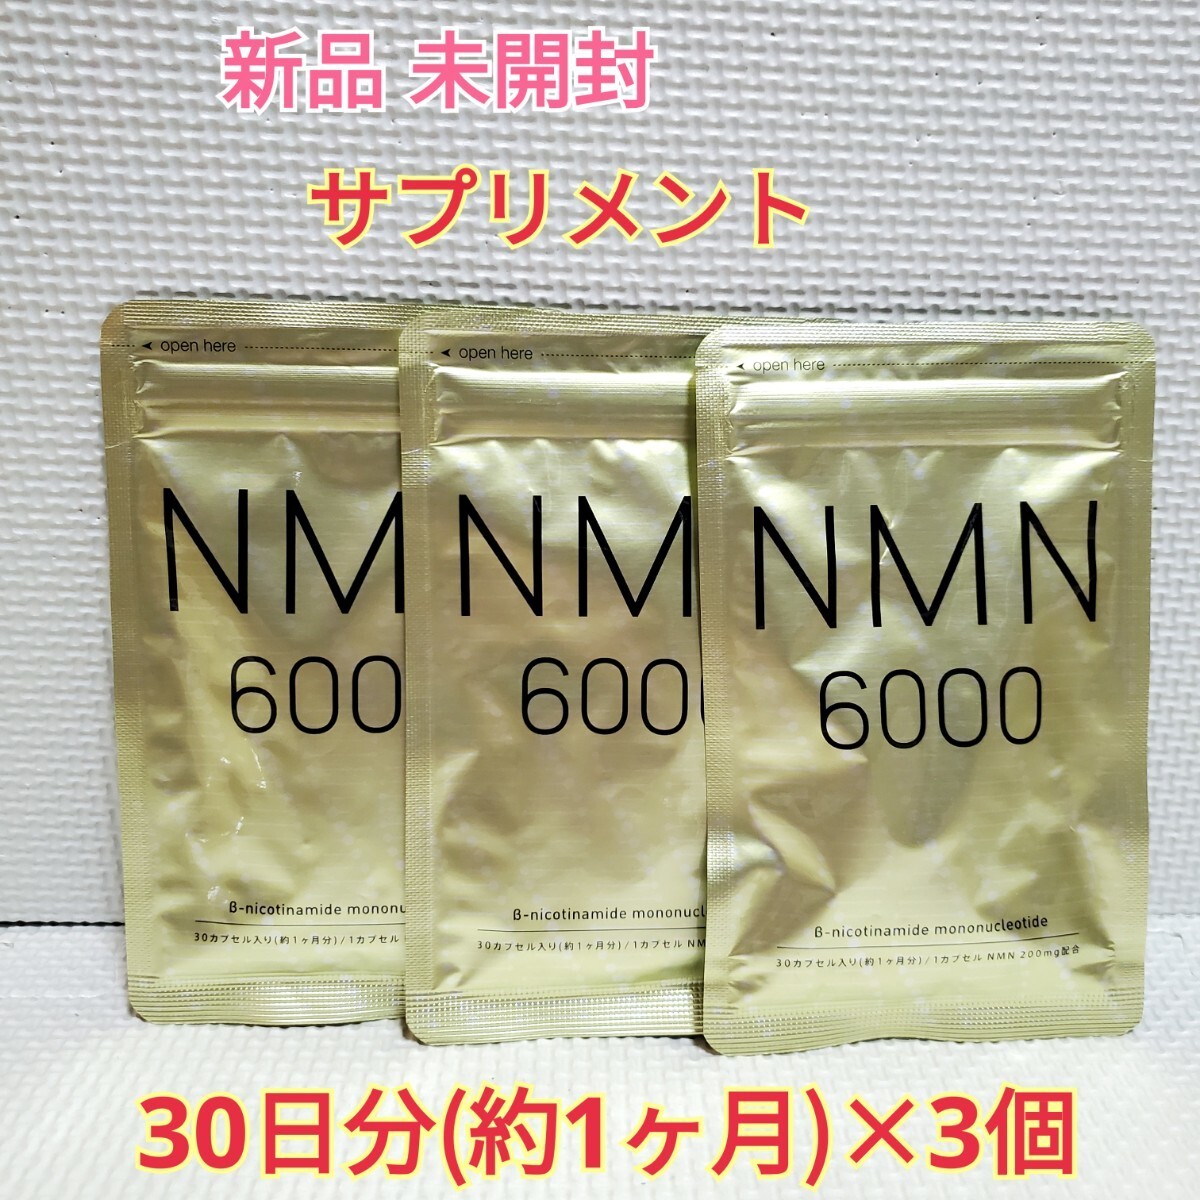 送料無料 新品 NMN サプリ ニコチンアミドモノヌクレオチド 3ヶ月 シードコムス サプリメント ダイエットサポート エイジングケアサポート_画像1